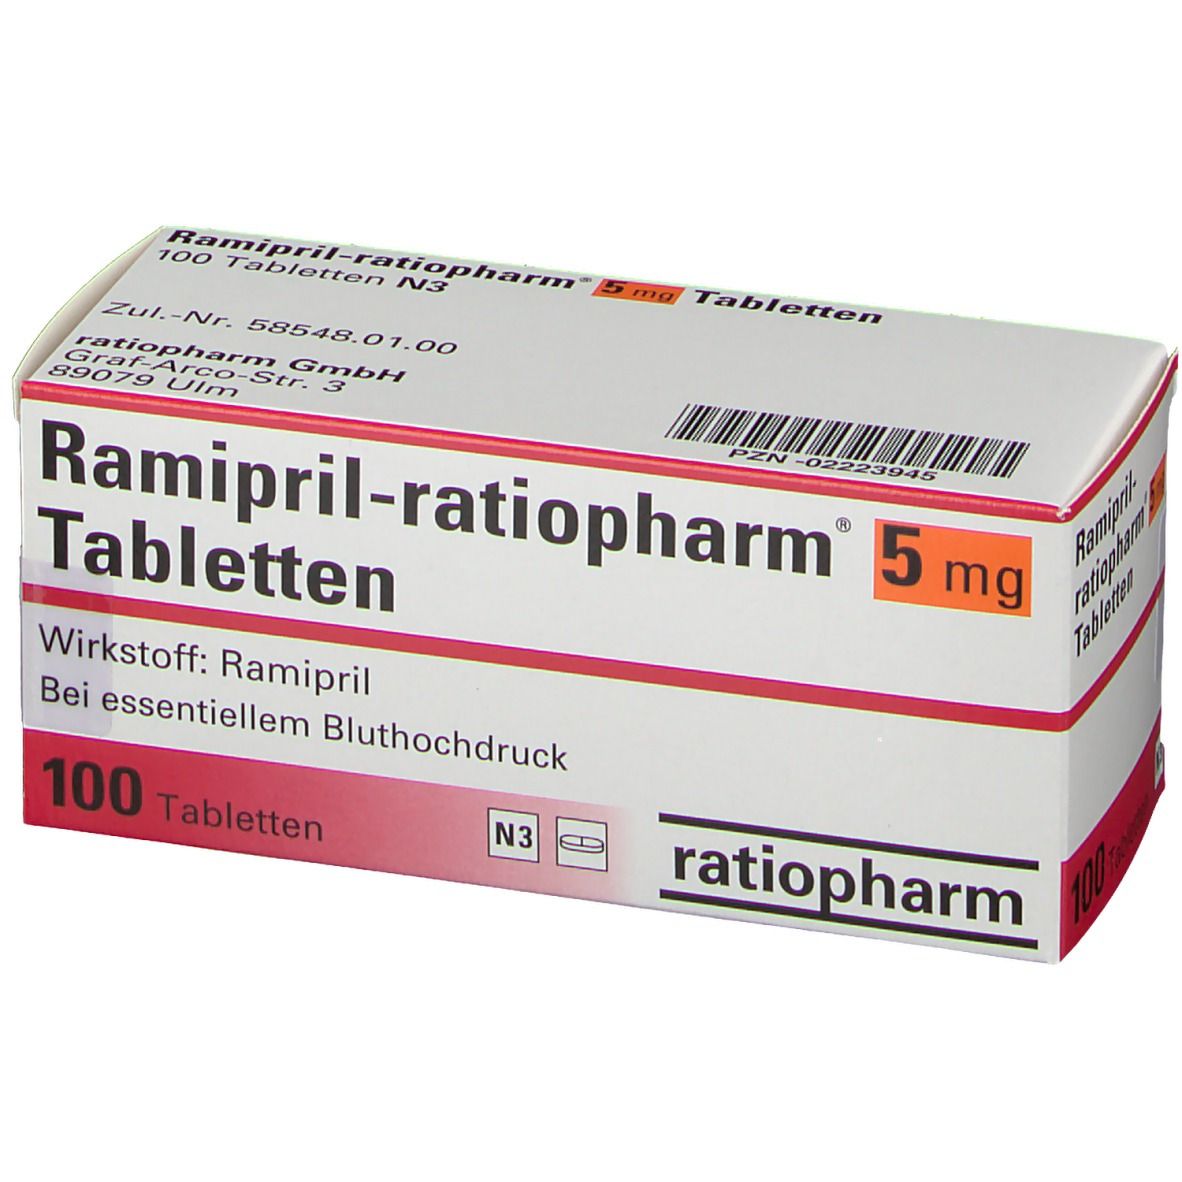 Ramipril-ratiopharm® 5 mg